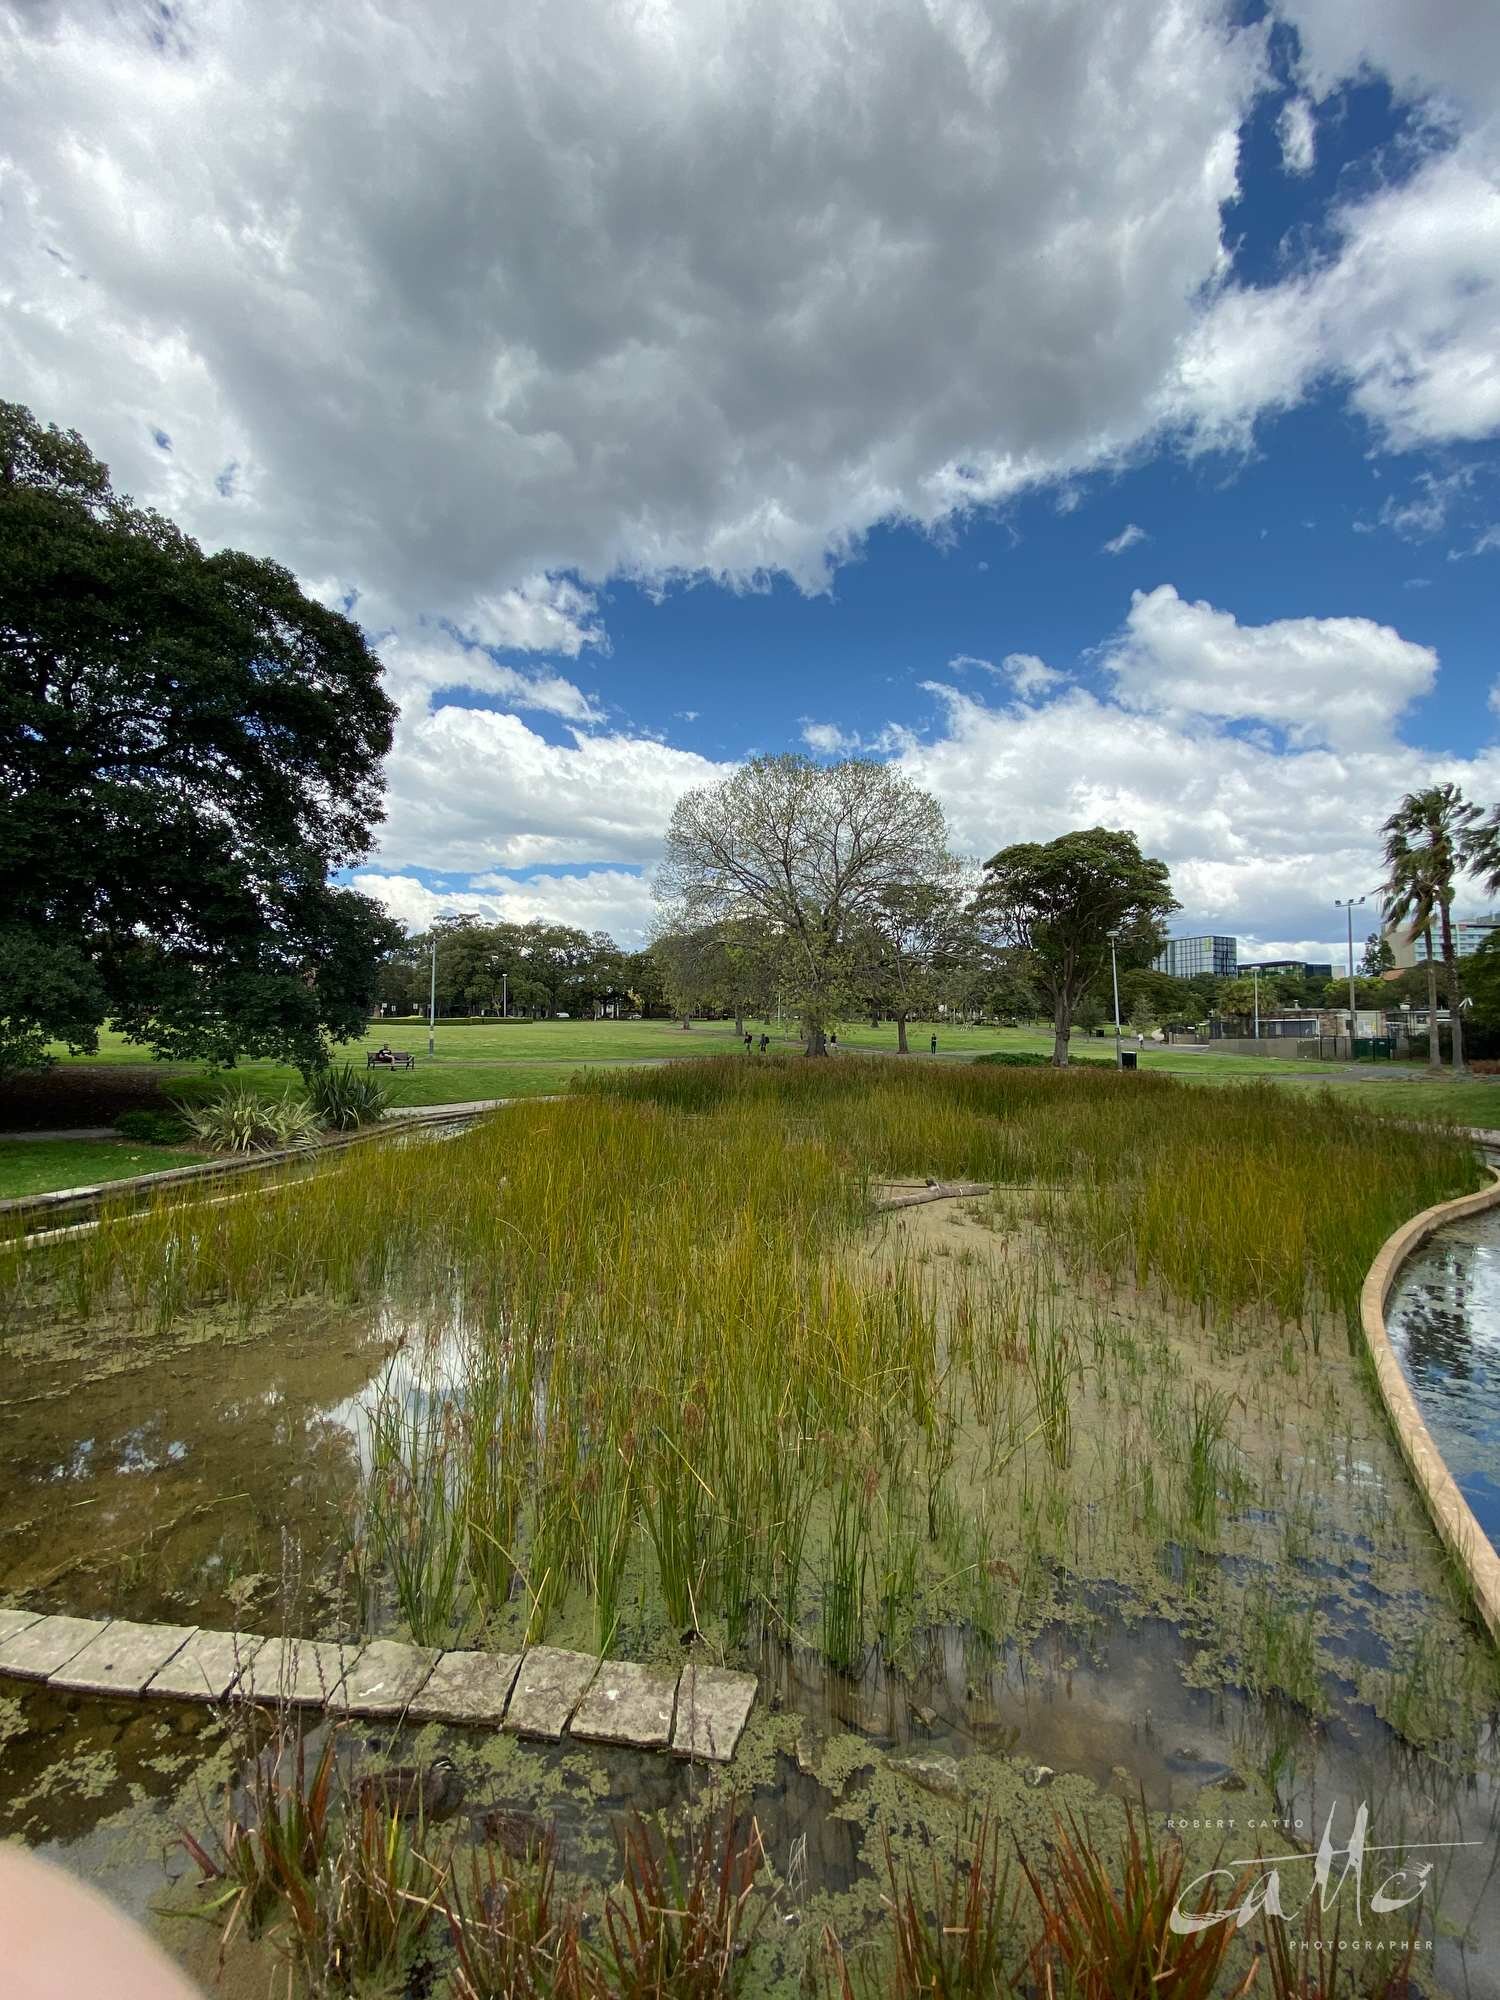 Victoria Park, Sydney (iPhone 11 Pro - 0.5x wide lens) [Feat. Finger]